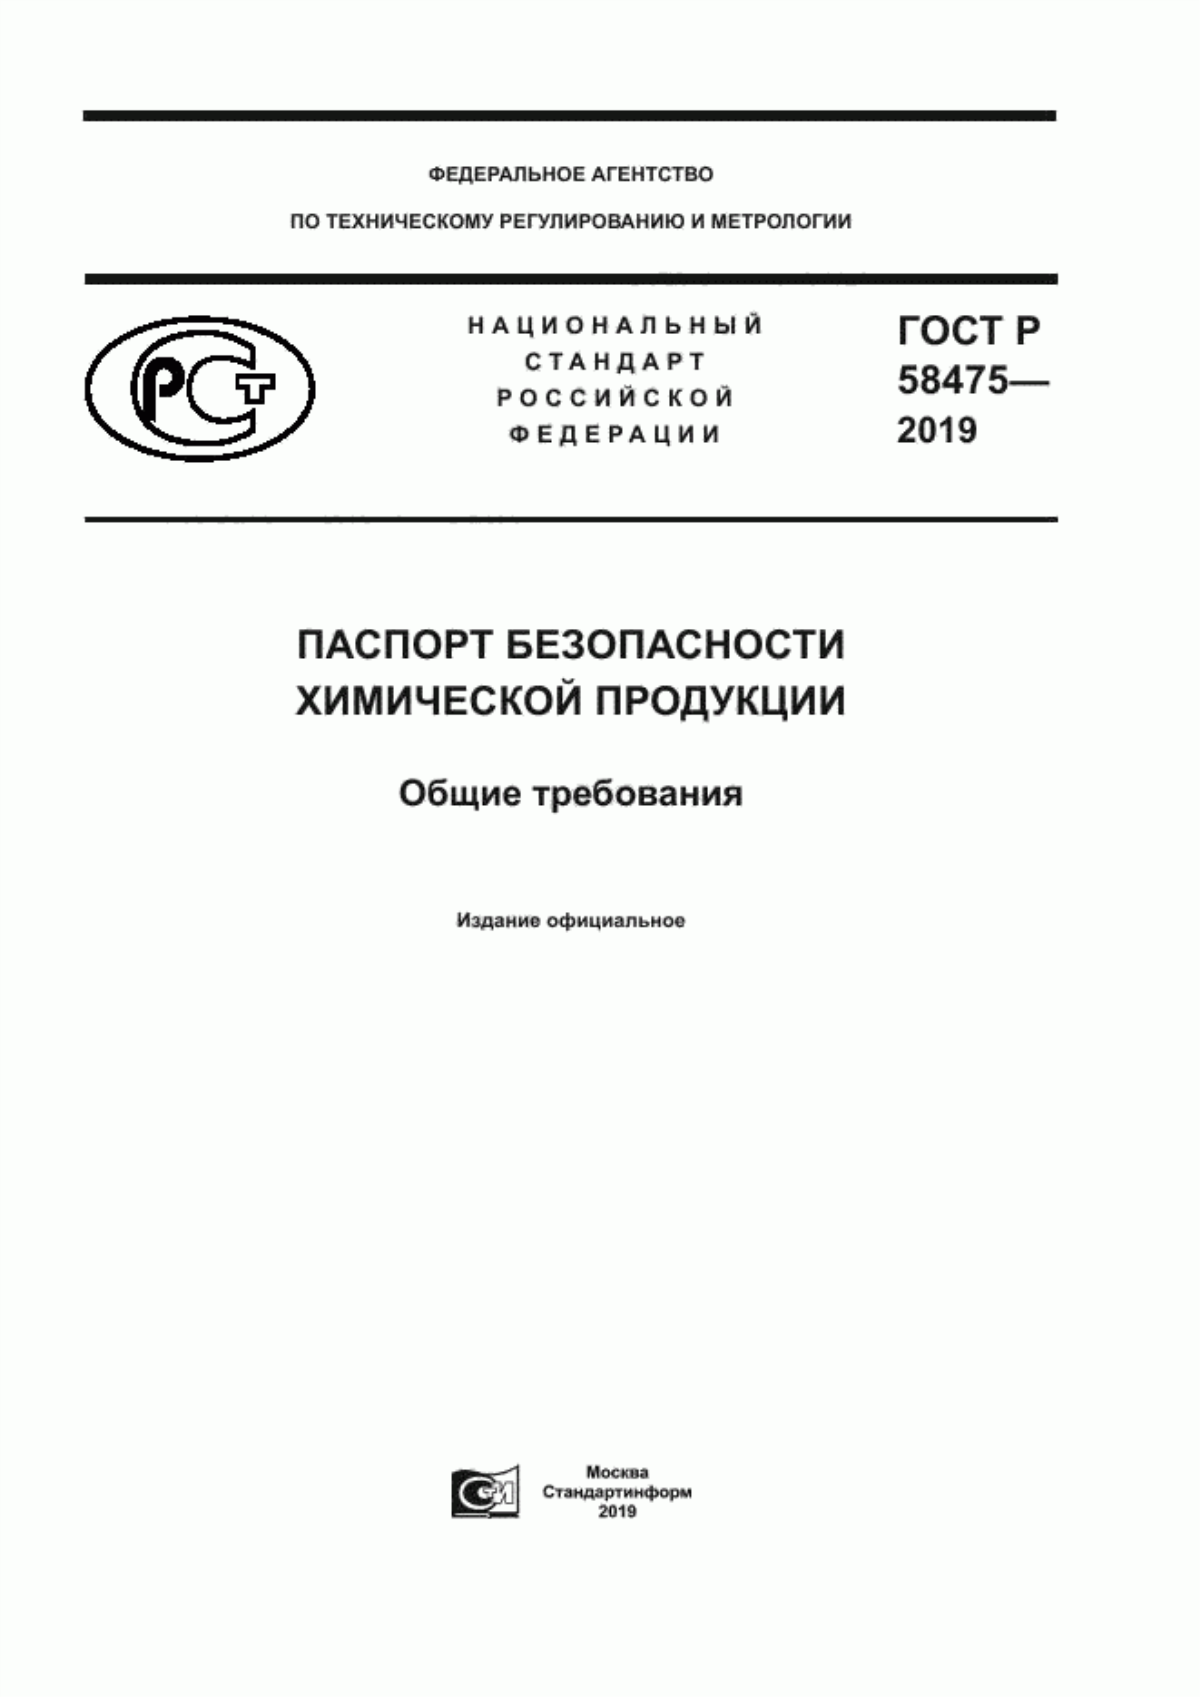 ГОСТ Р 58475-2019 Паспорт безопасности химической продукции. Общие требования